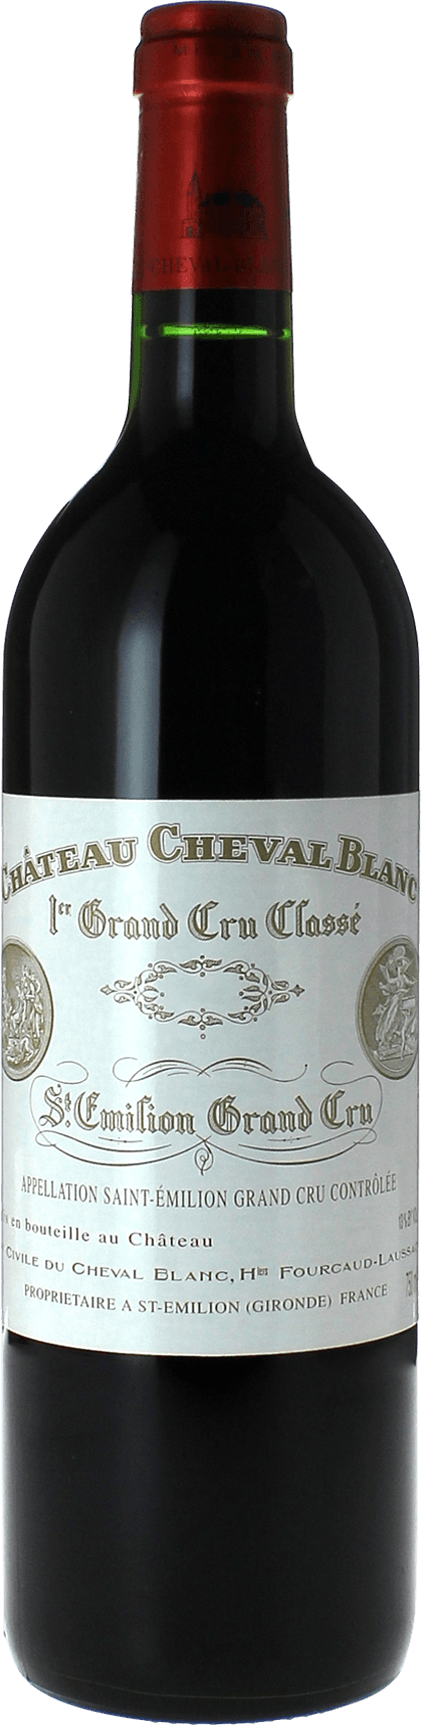 Cheval blanc st emilion 2008 1er Grand cru class A Saint-Emilion, Bordeaux rouge